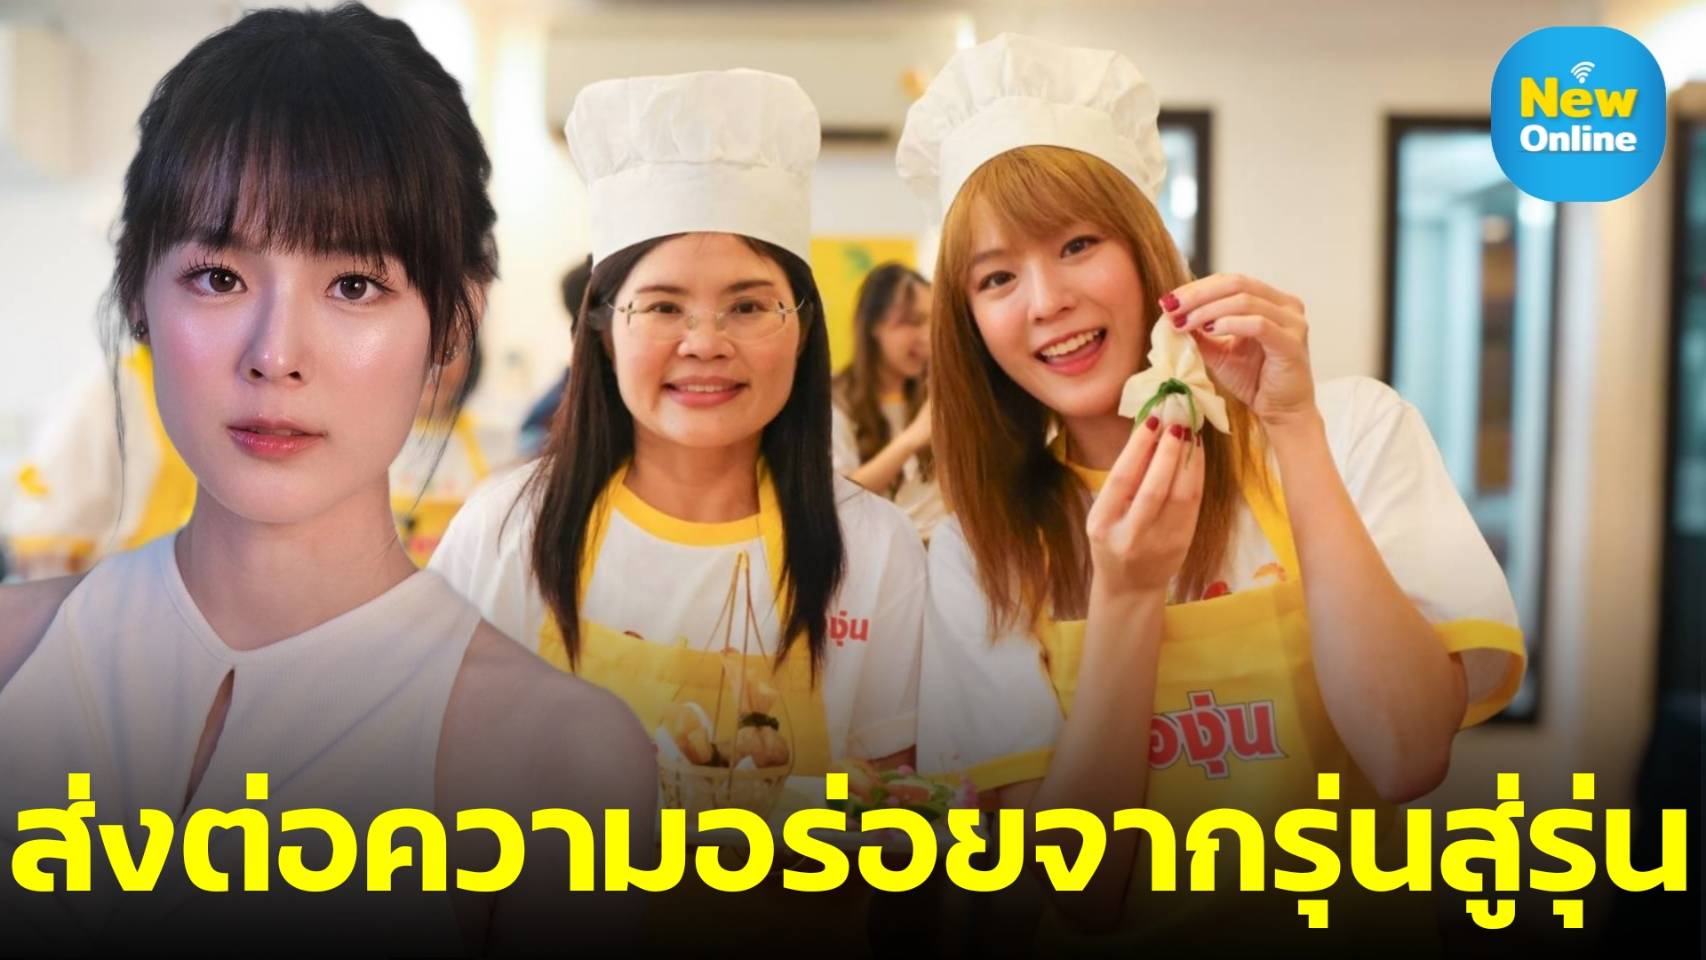 “แพทตี้ อังศุมาลิน” ร่วมส่งต่อความอร่อยจากรุ่นสู่รุ่น กับกิจกรรม Cooking Class สุด Exclusive